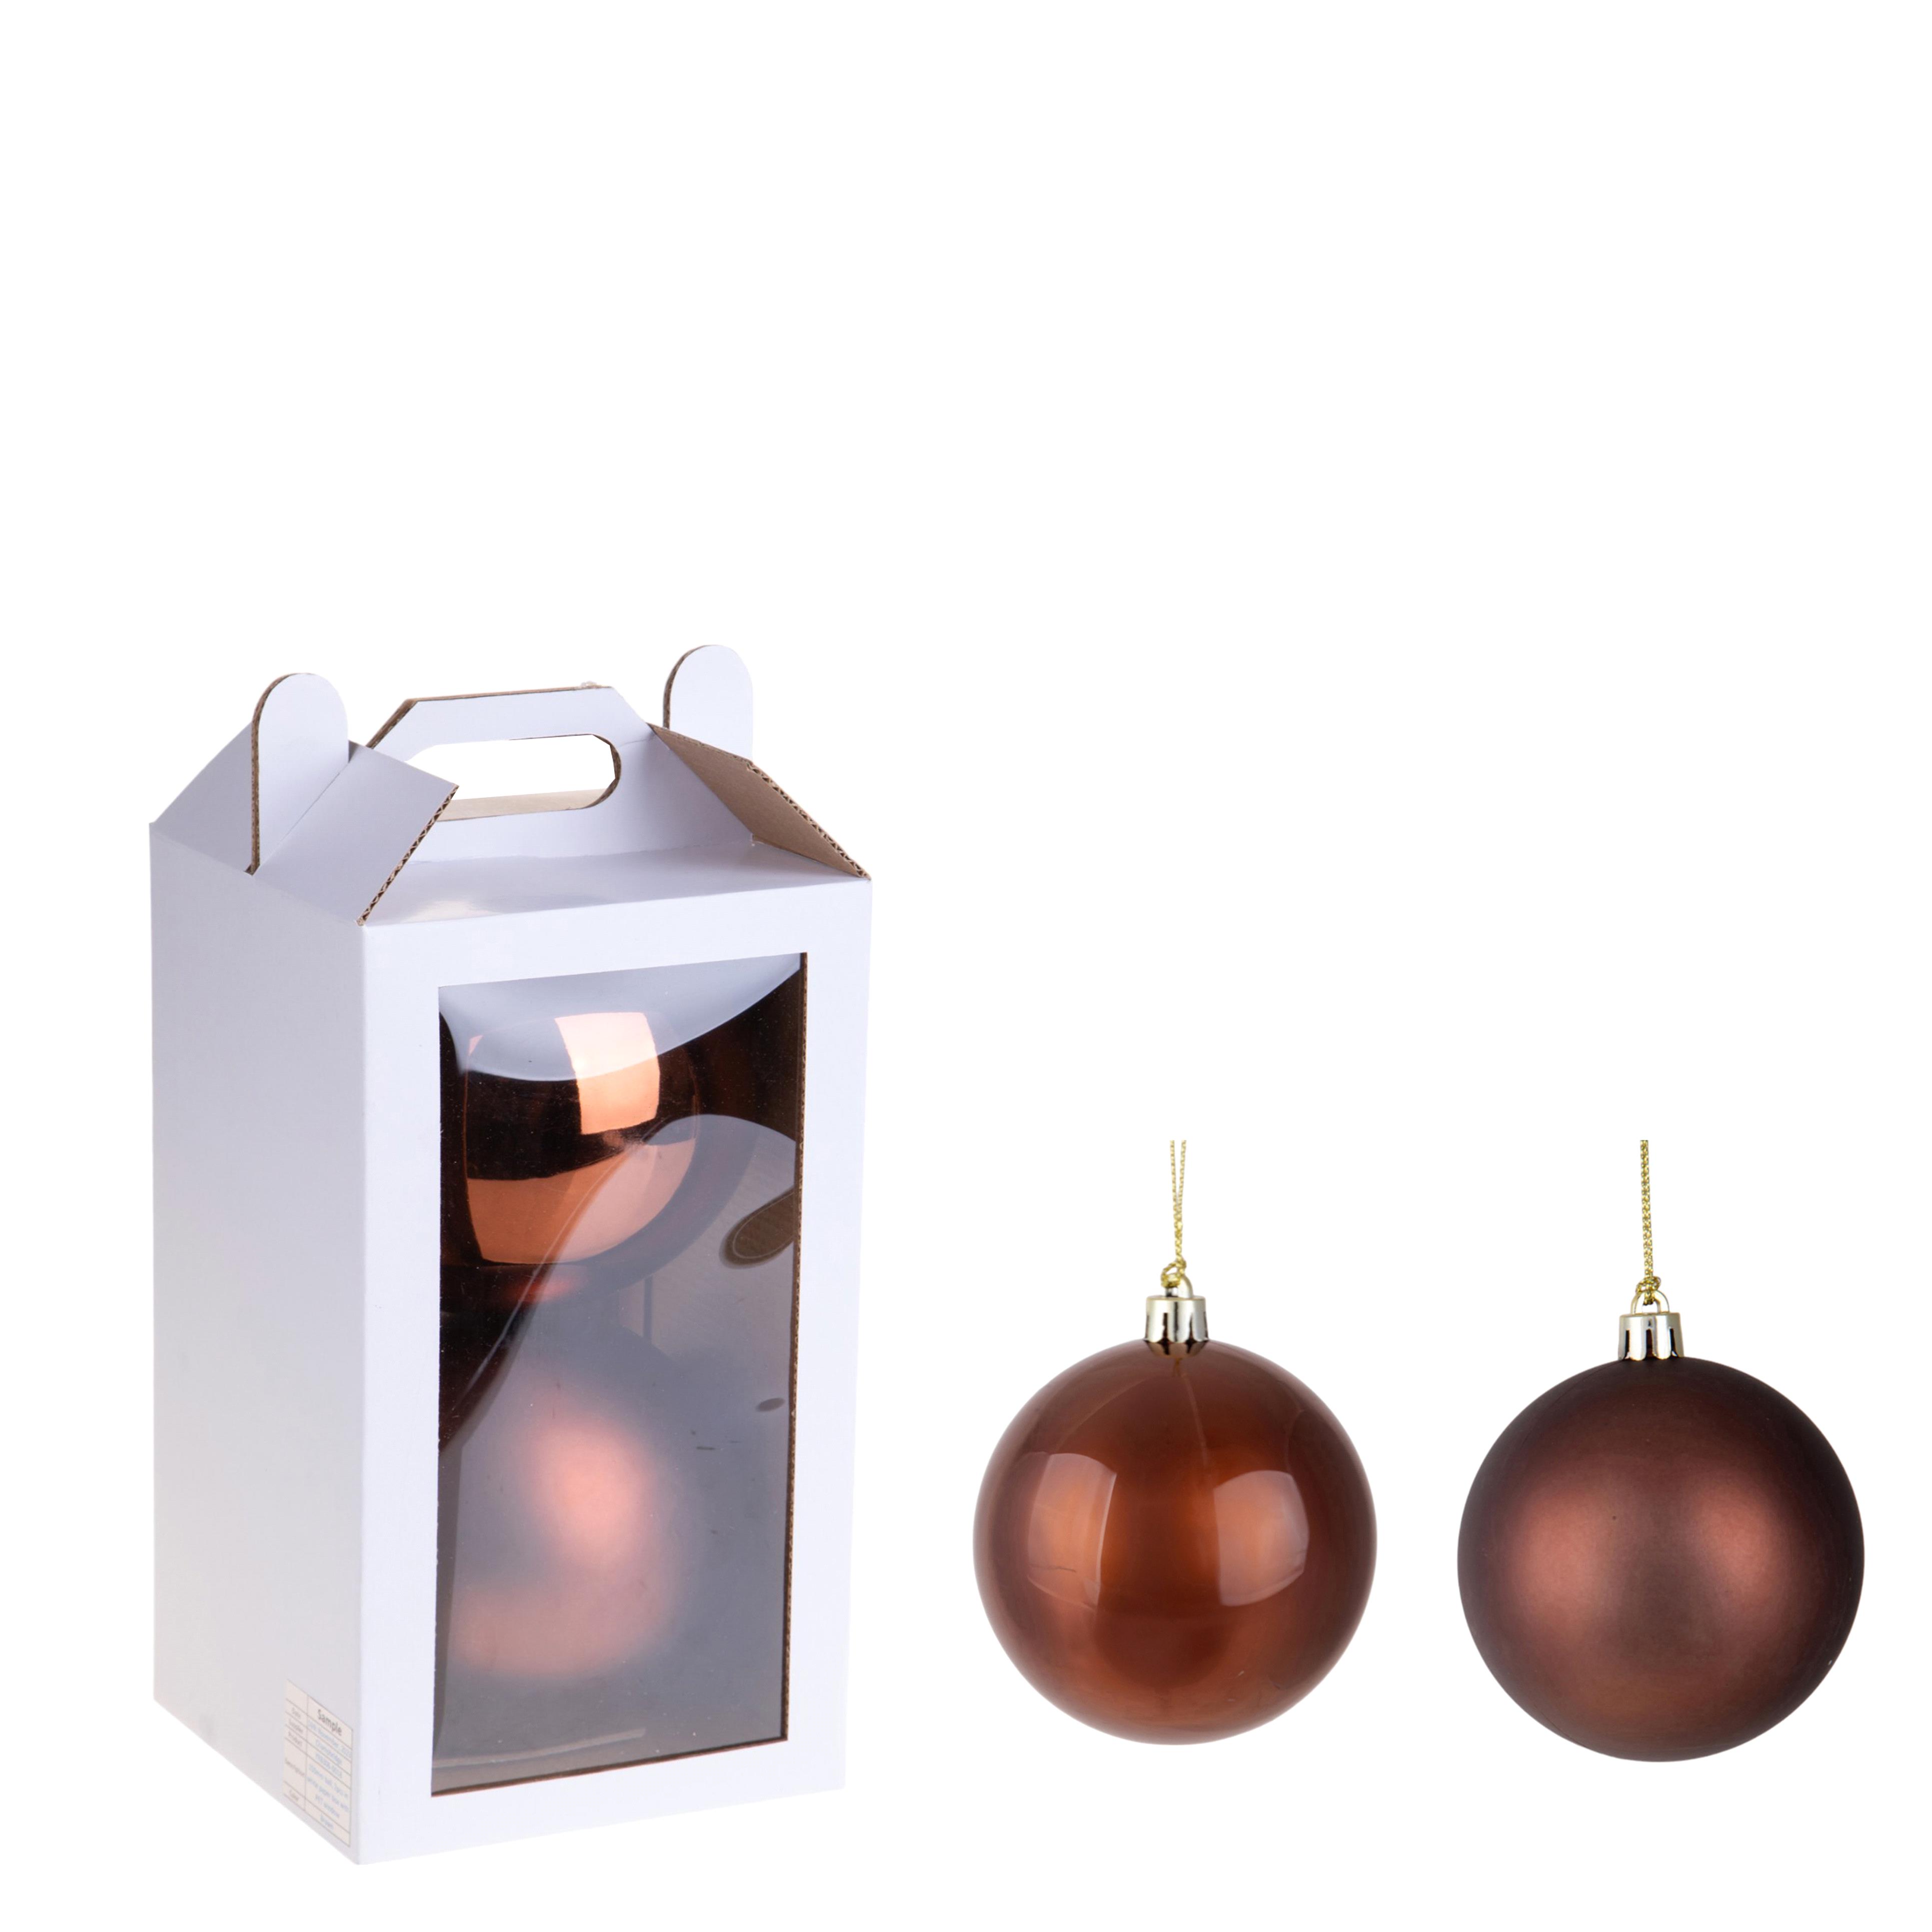 Weihnachtsartikel, Bälle zu hängen und Dekorationen in shaum, SET/2 SFERE D.20 CM ASS.MATT+SHINY